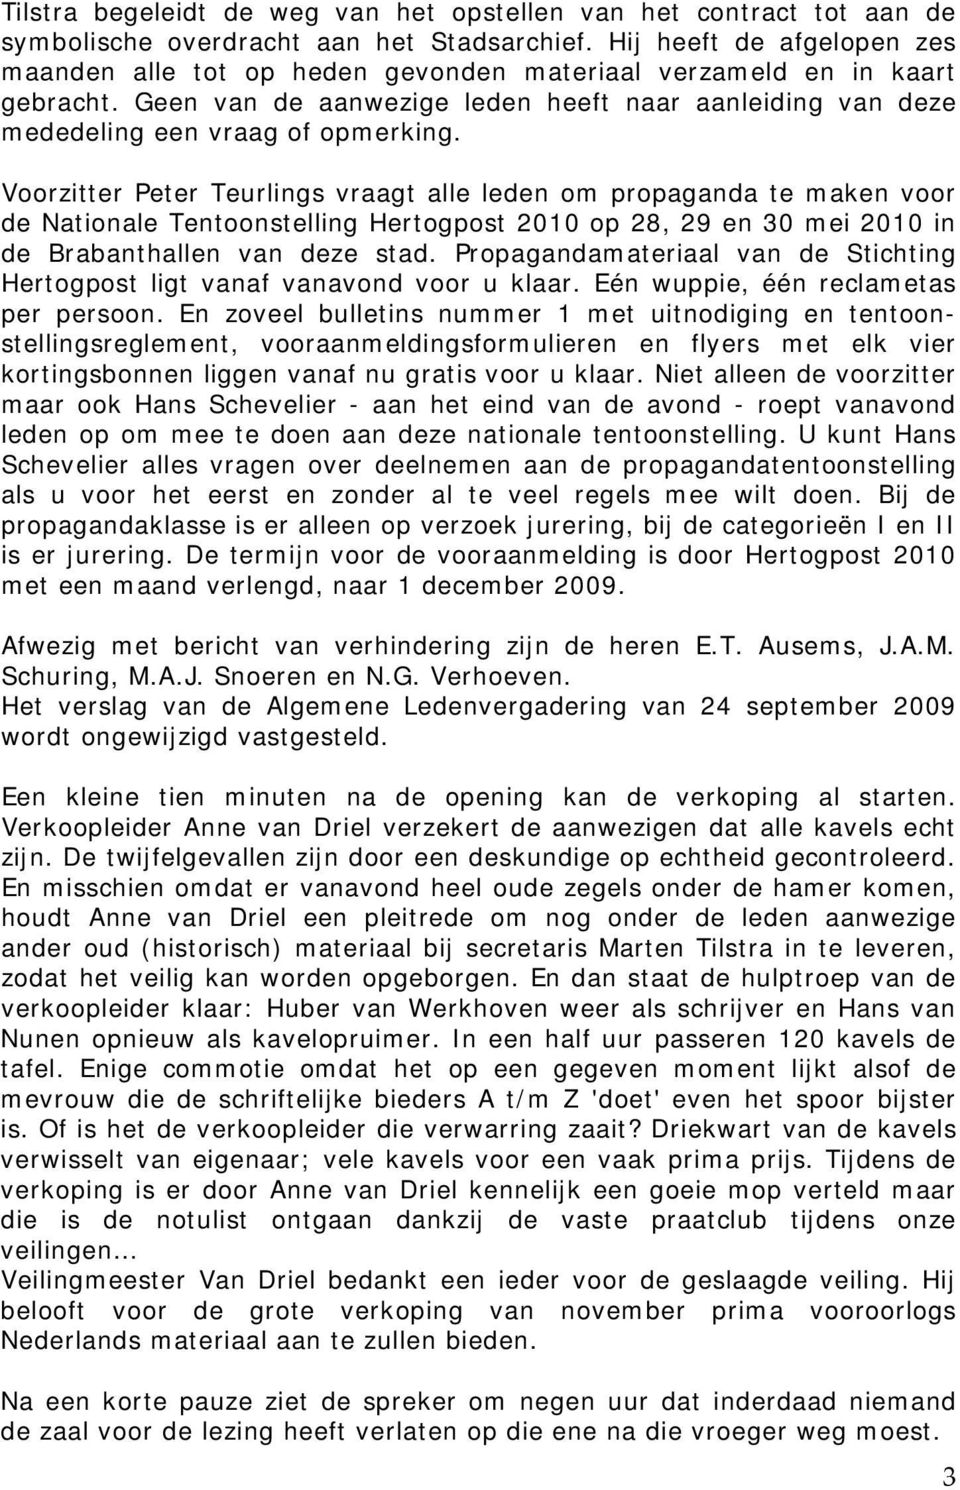 Voorzitter Peter Teurlings vraagt alle leden om propaganda te maken voor de Nationale Tentoonstelling Hertogpost 2010 op 28, 29 en 30 mei 2010 in de Brabanthallen van deze stad.